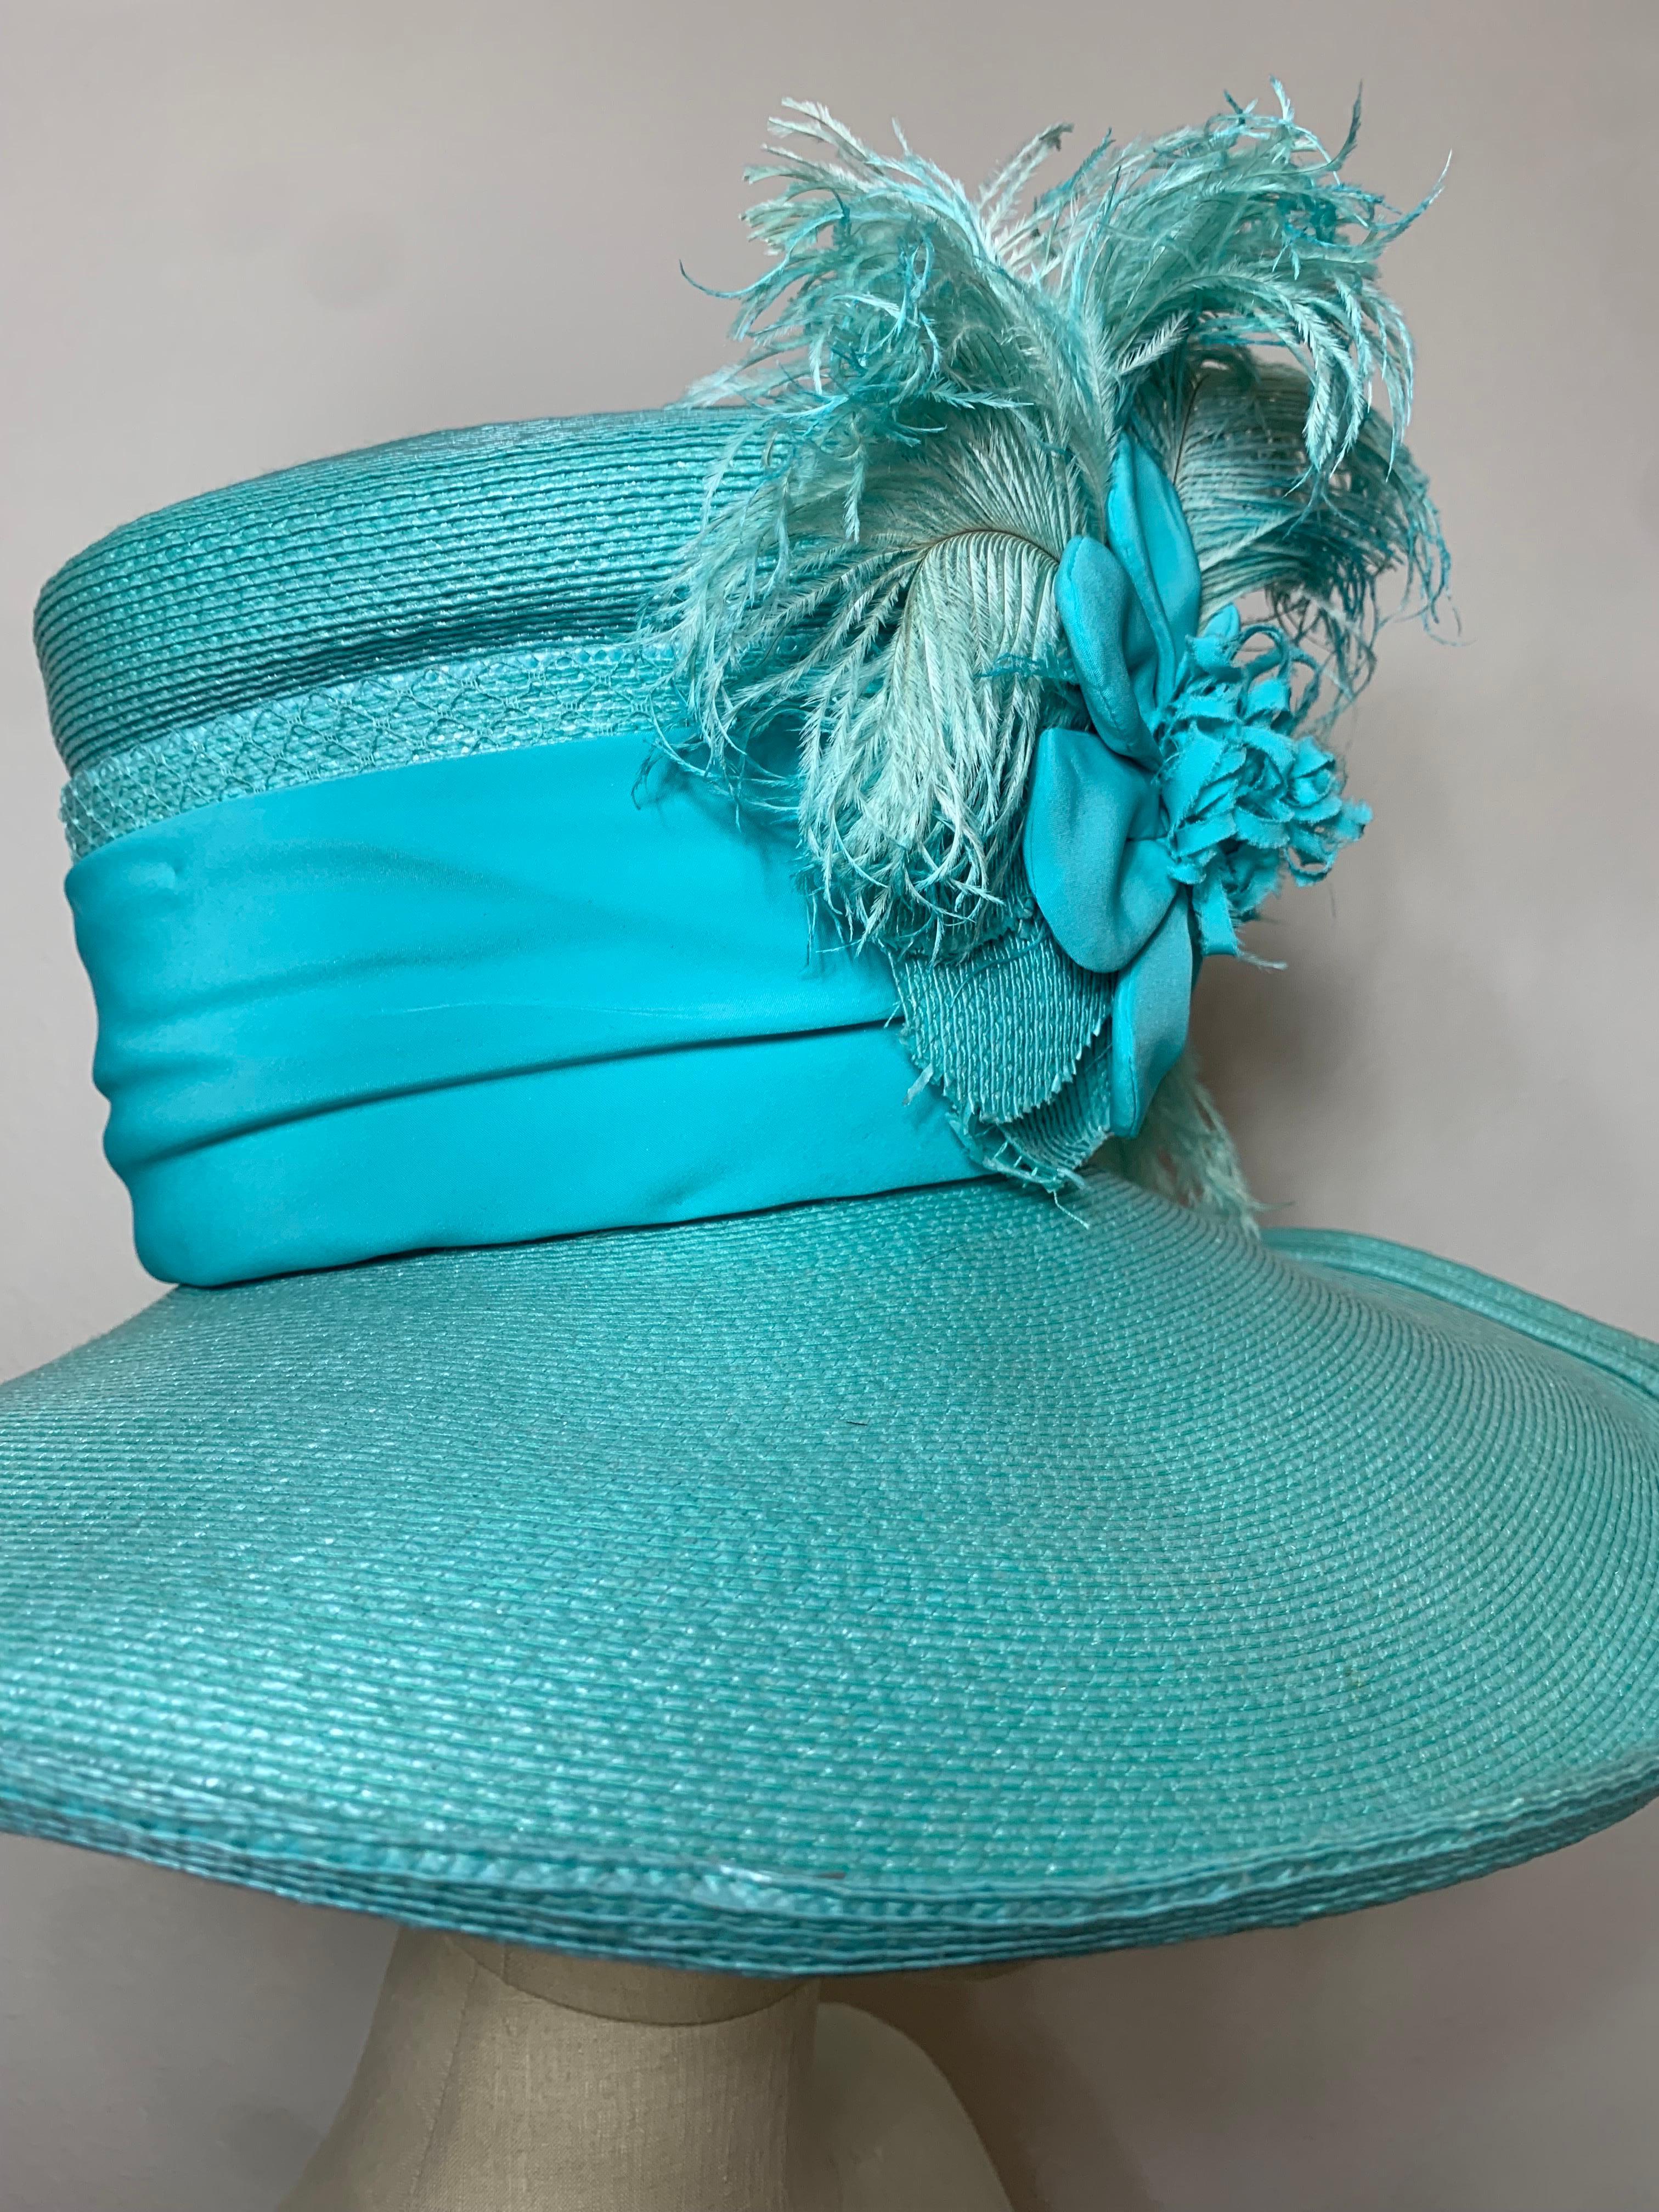 2005 Maison Michel Aqua Straw Wide Brim Hat w Extravagant Feather & Floral Trim For Sale 2